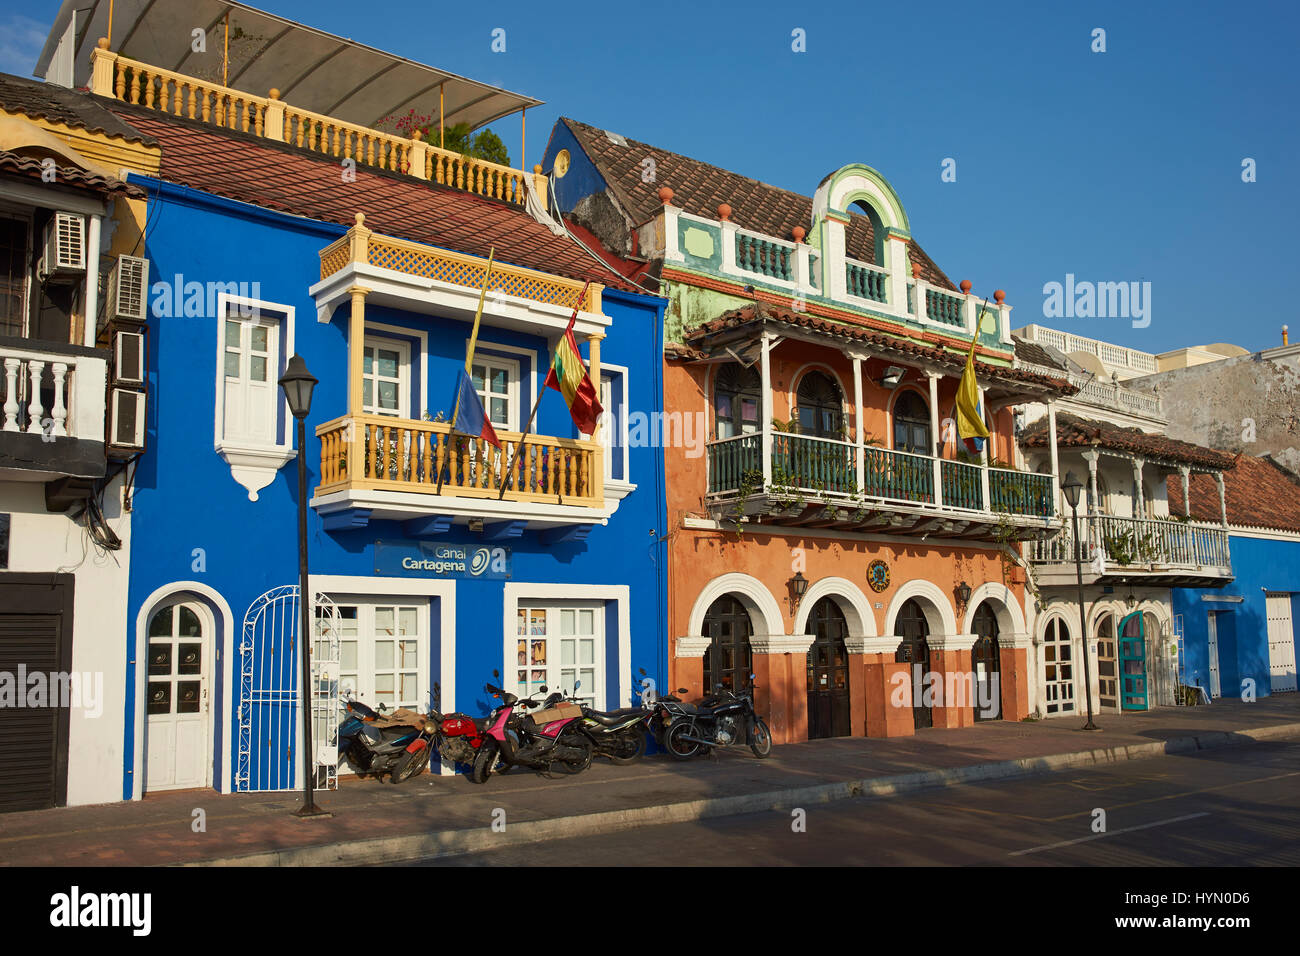 Stile Spagnolo tradizionale edificio coloniale in Getsemini area del centro storico della città di Cartagena in Colombia. Foto Stock